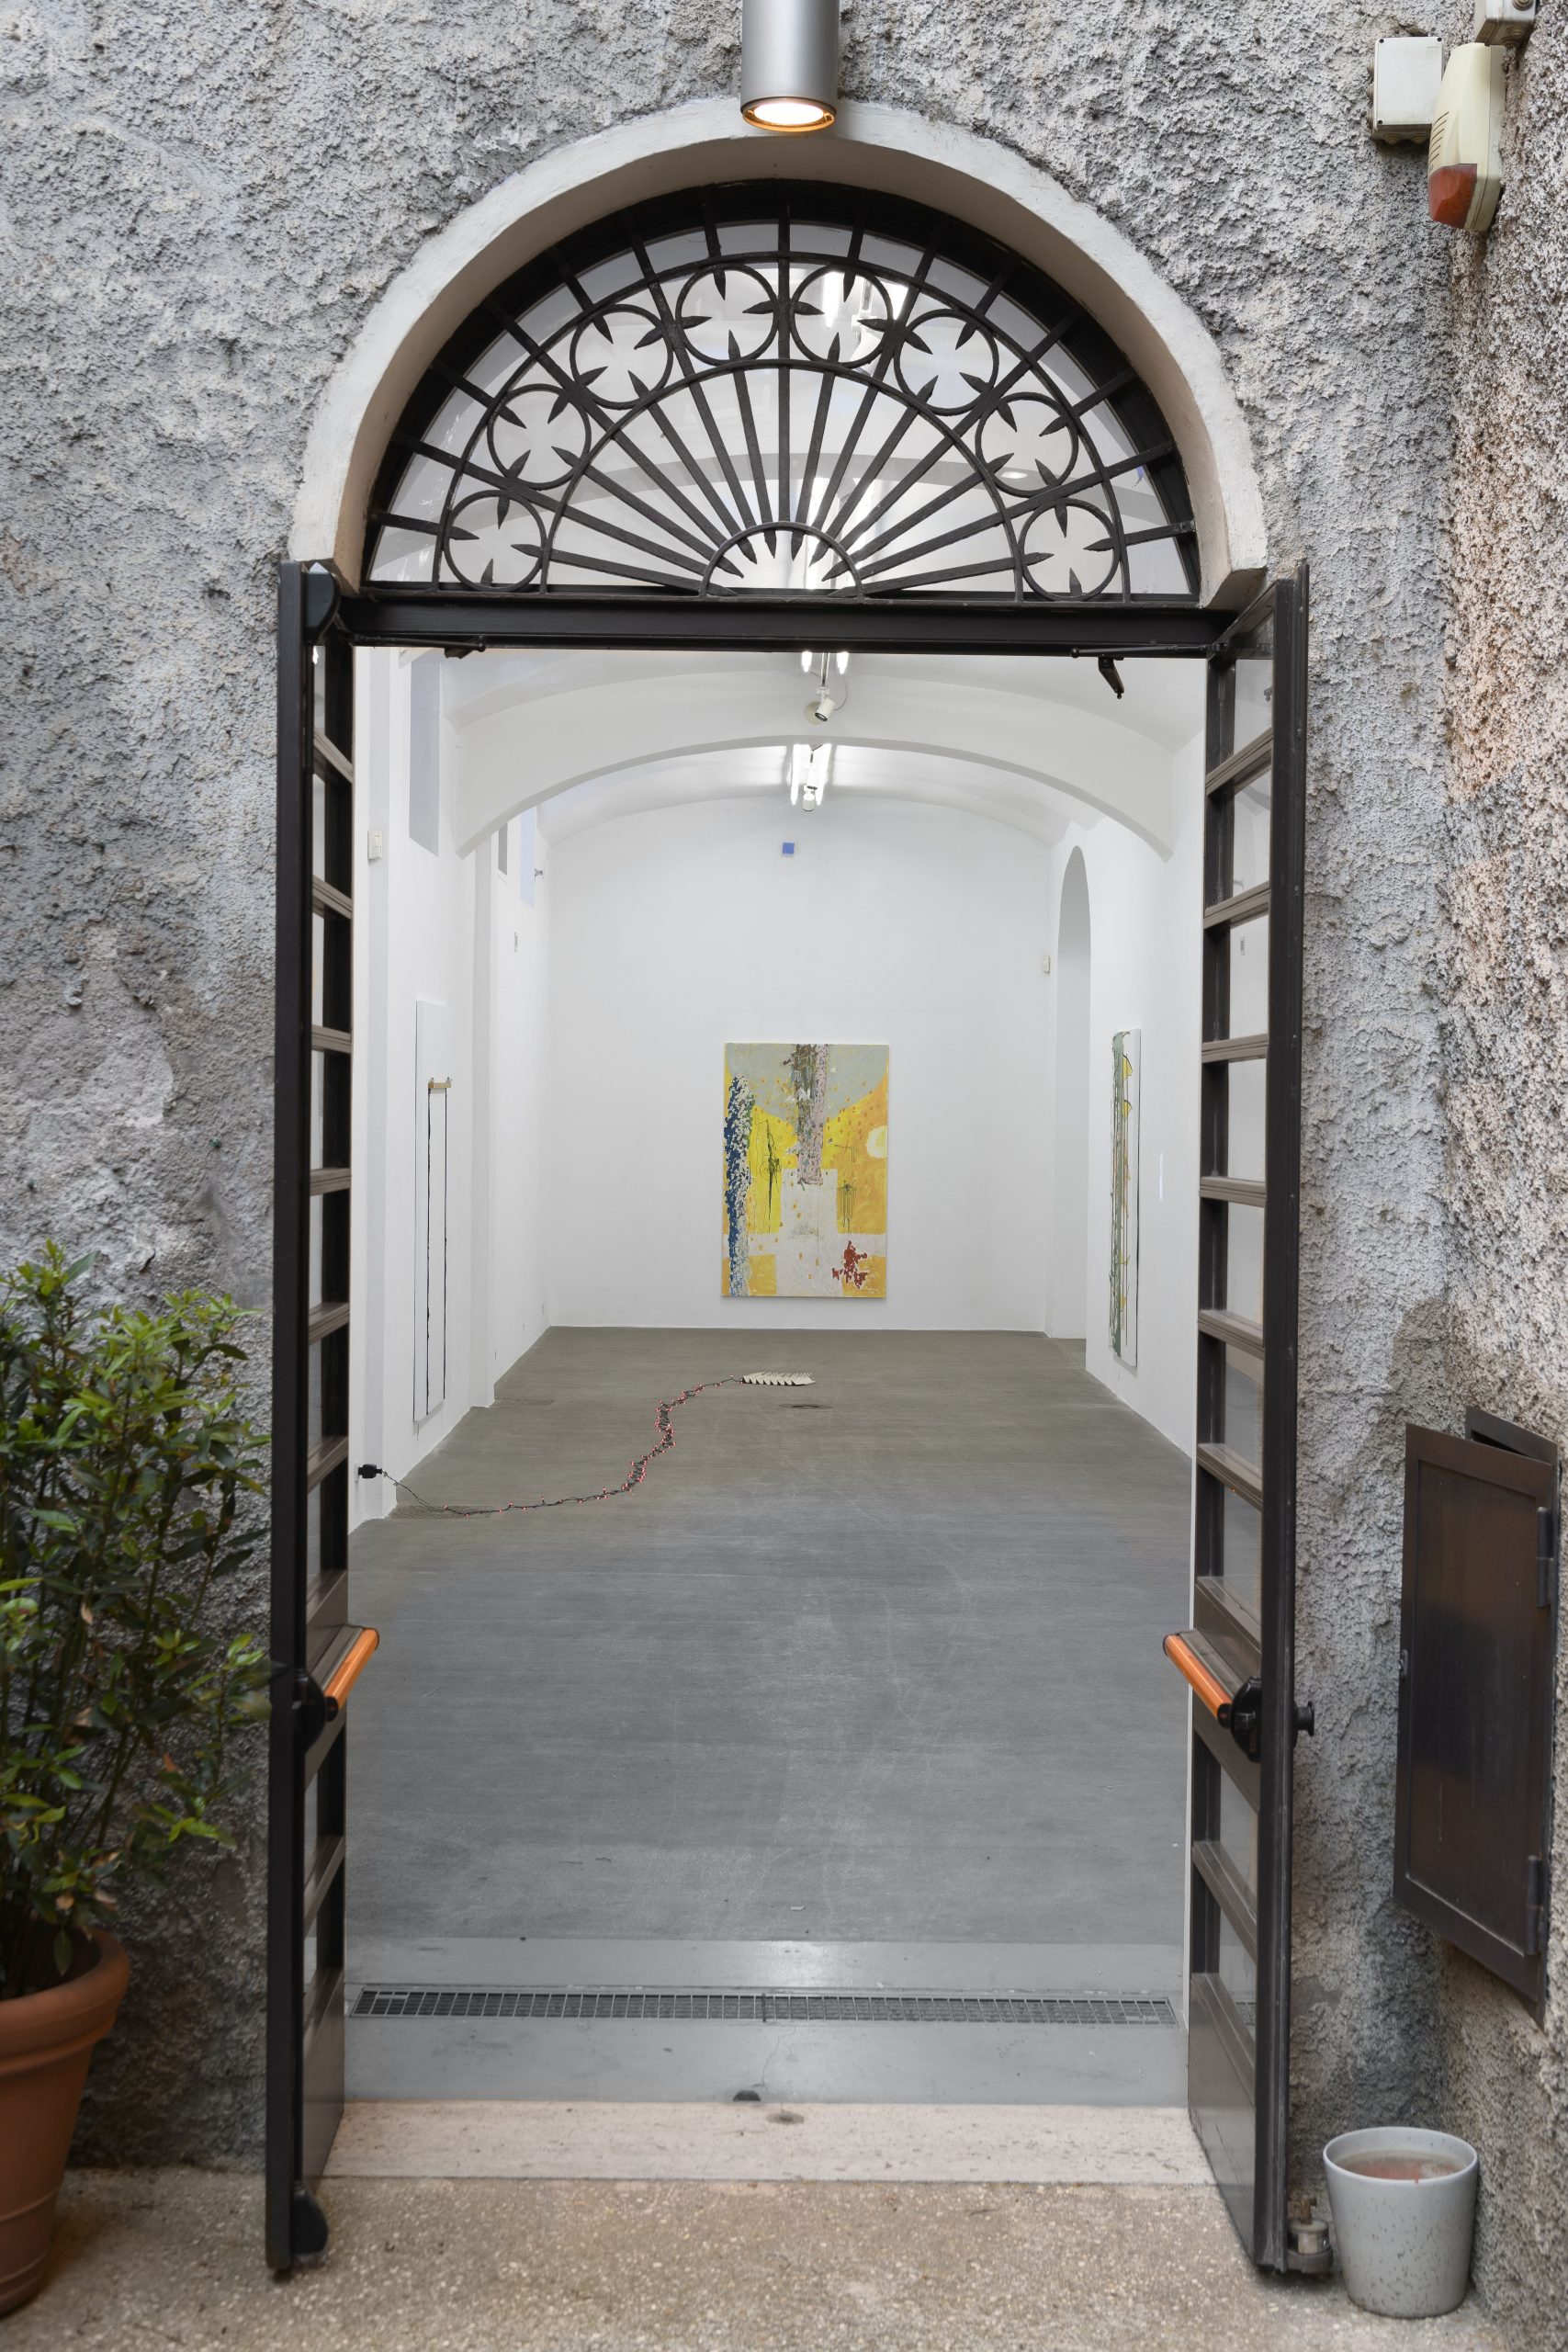 An exploration of how time only exists in half steps. Installation view presso Fondazione Giuliani, foto di Giorgio Benni